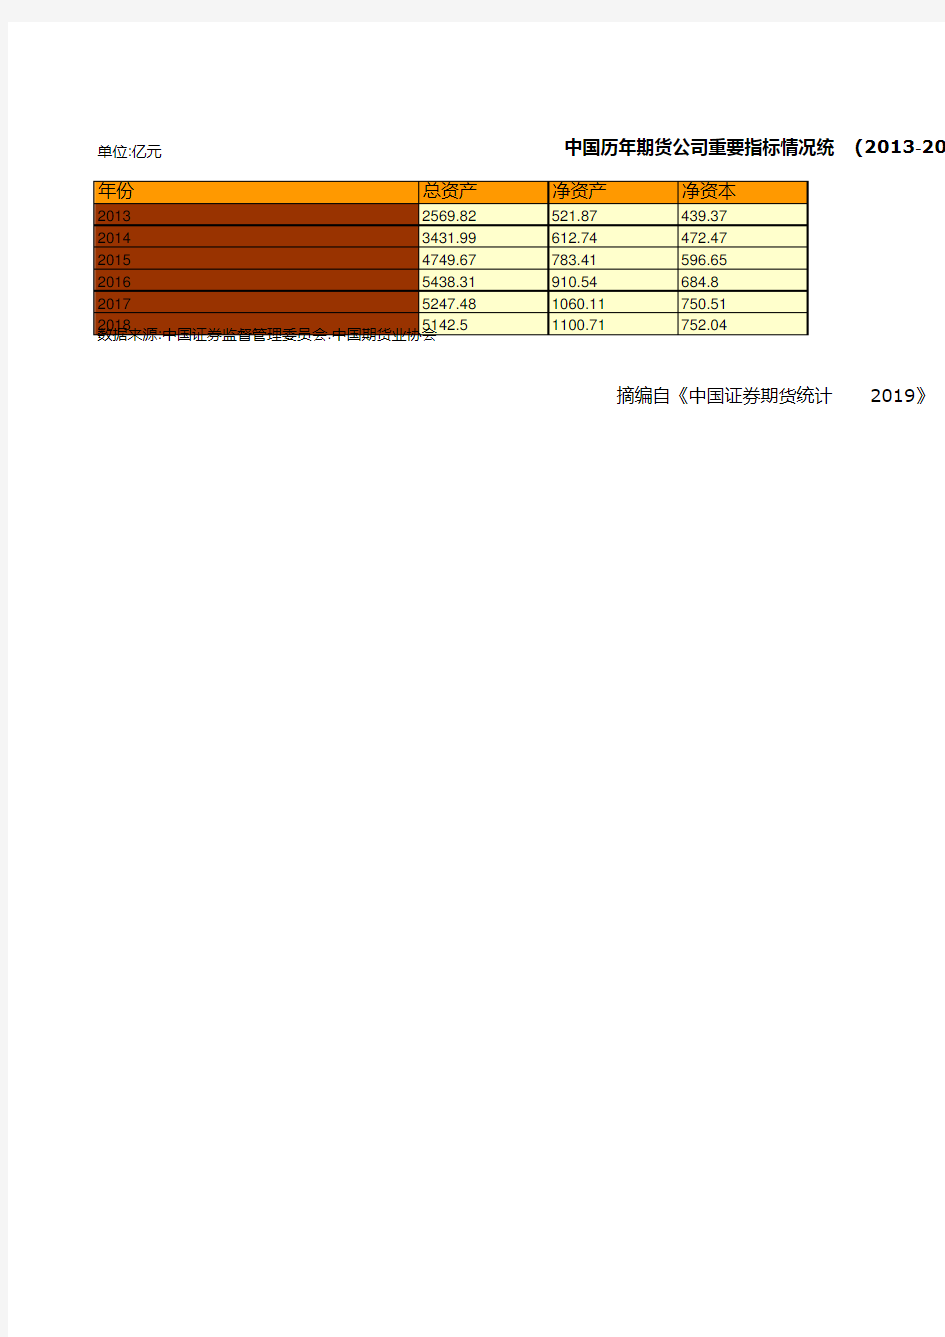 证券期货年鉴指标数据：中国历年期货公司重要指标情况统计(2013-2018)